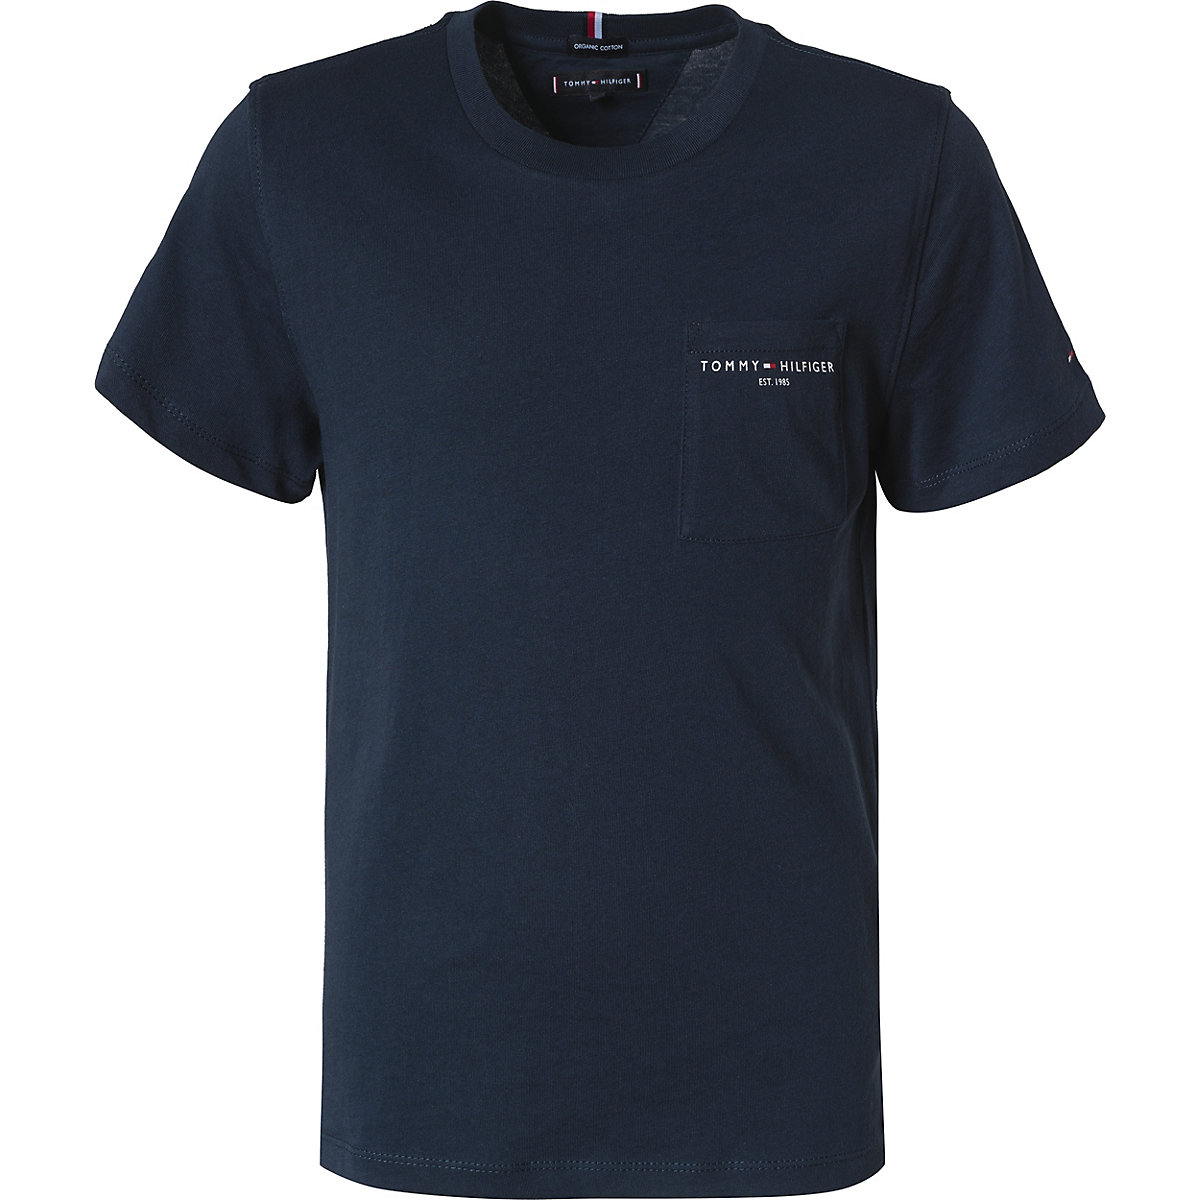 TOMMY HILFIGER T-Shirt für Jungen Organic Cotton blau